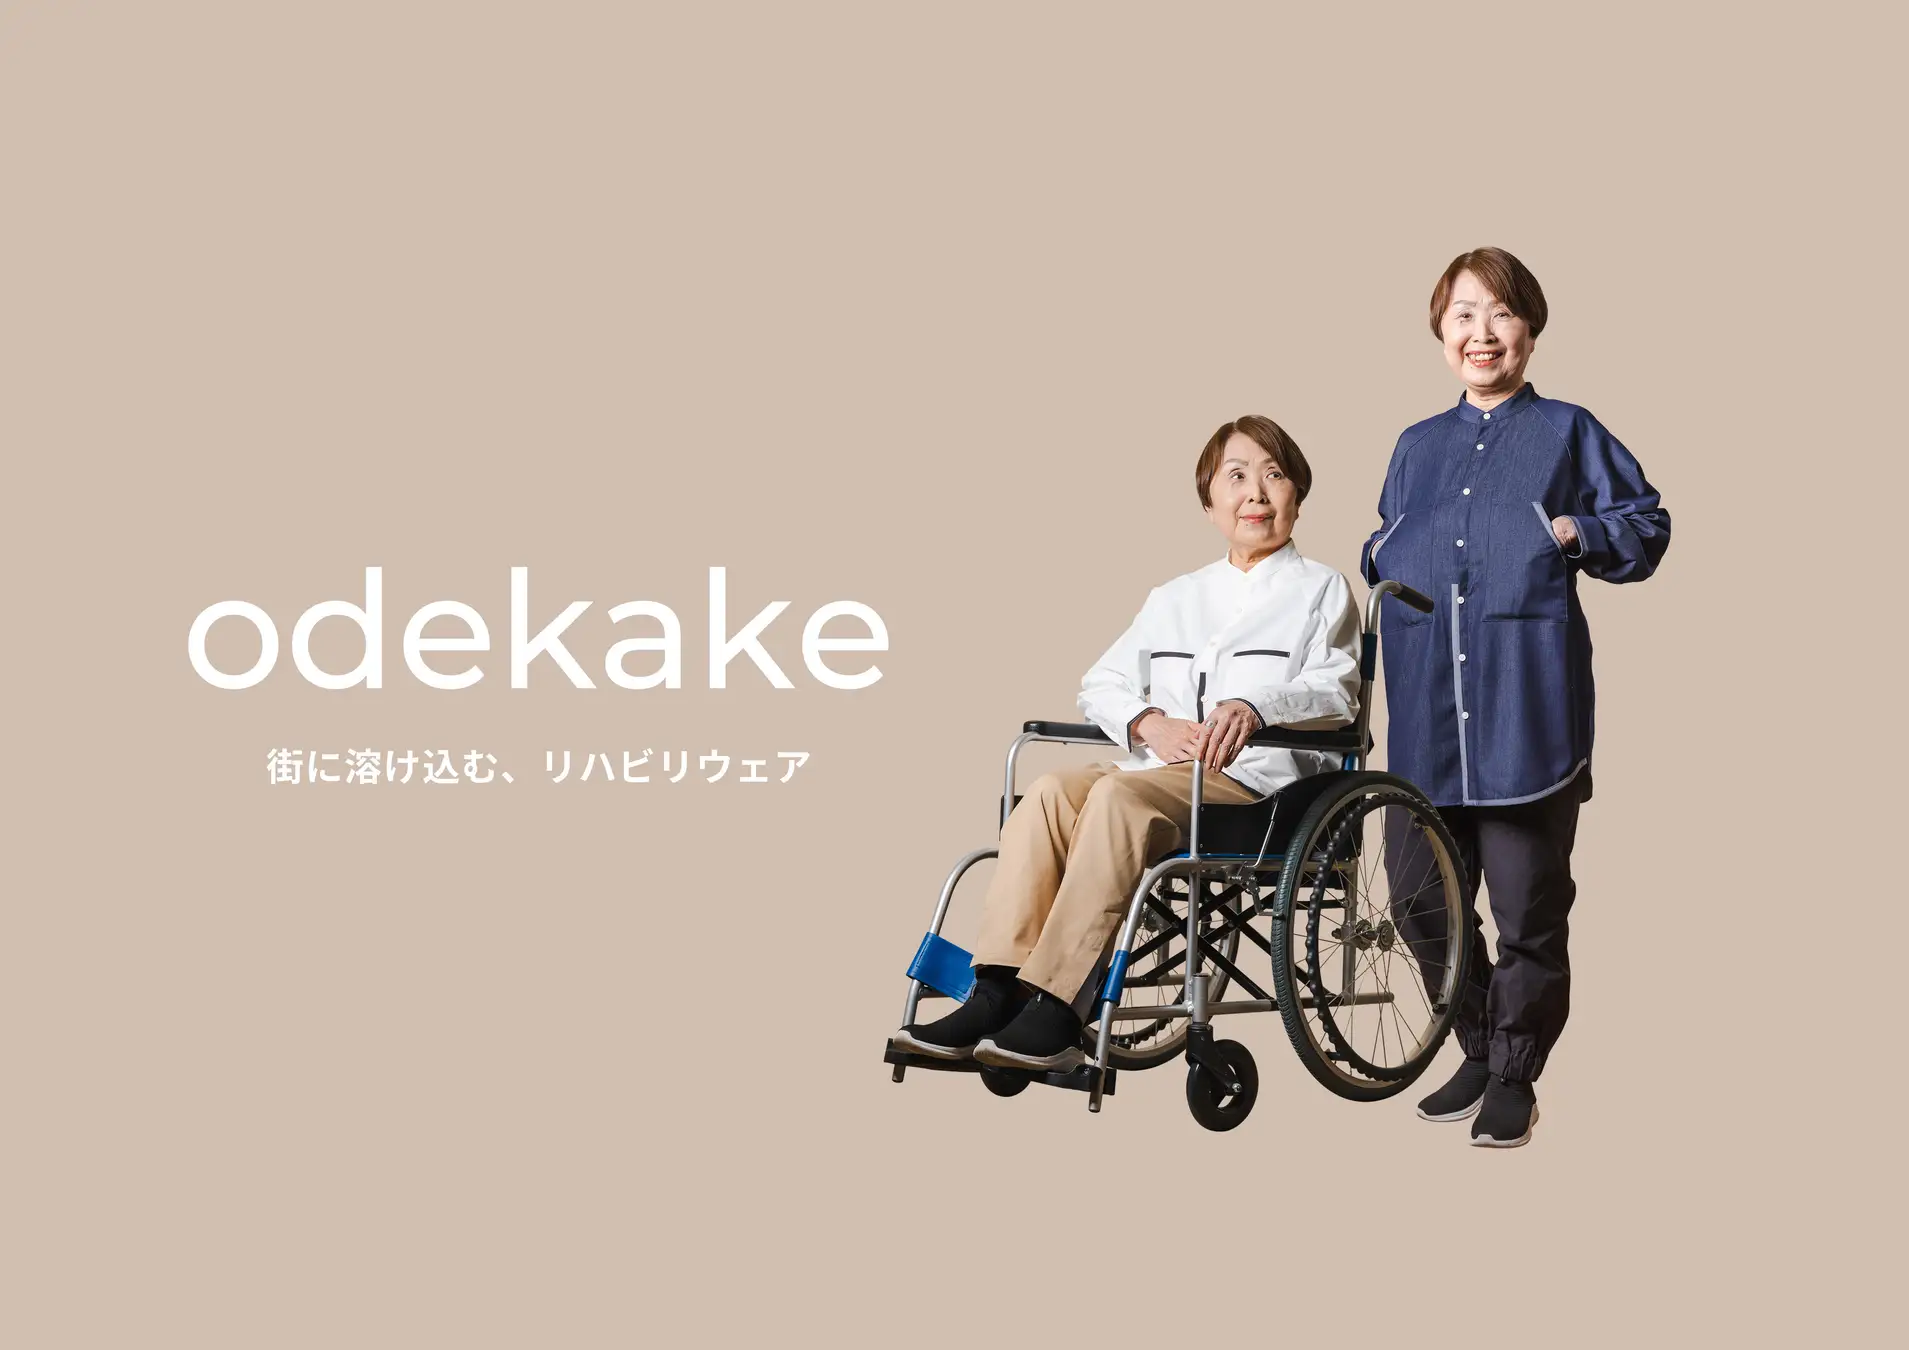 病院、研究所、ソーシャルベンチャーの3社で協働開発した、これまでにないリハビリウェア「odekake」を病院で販売開始しました